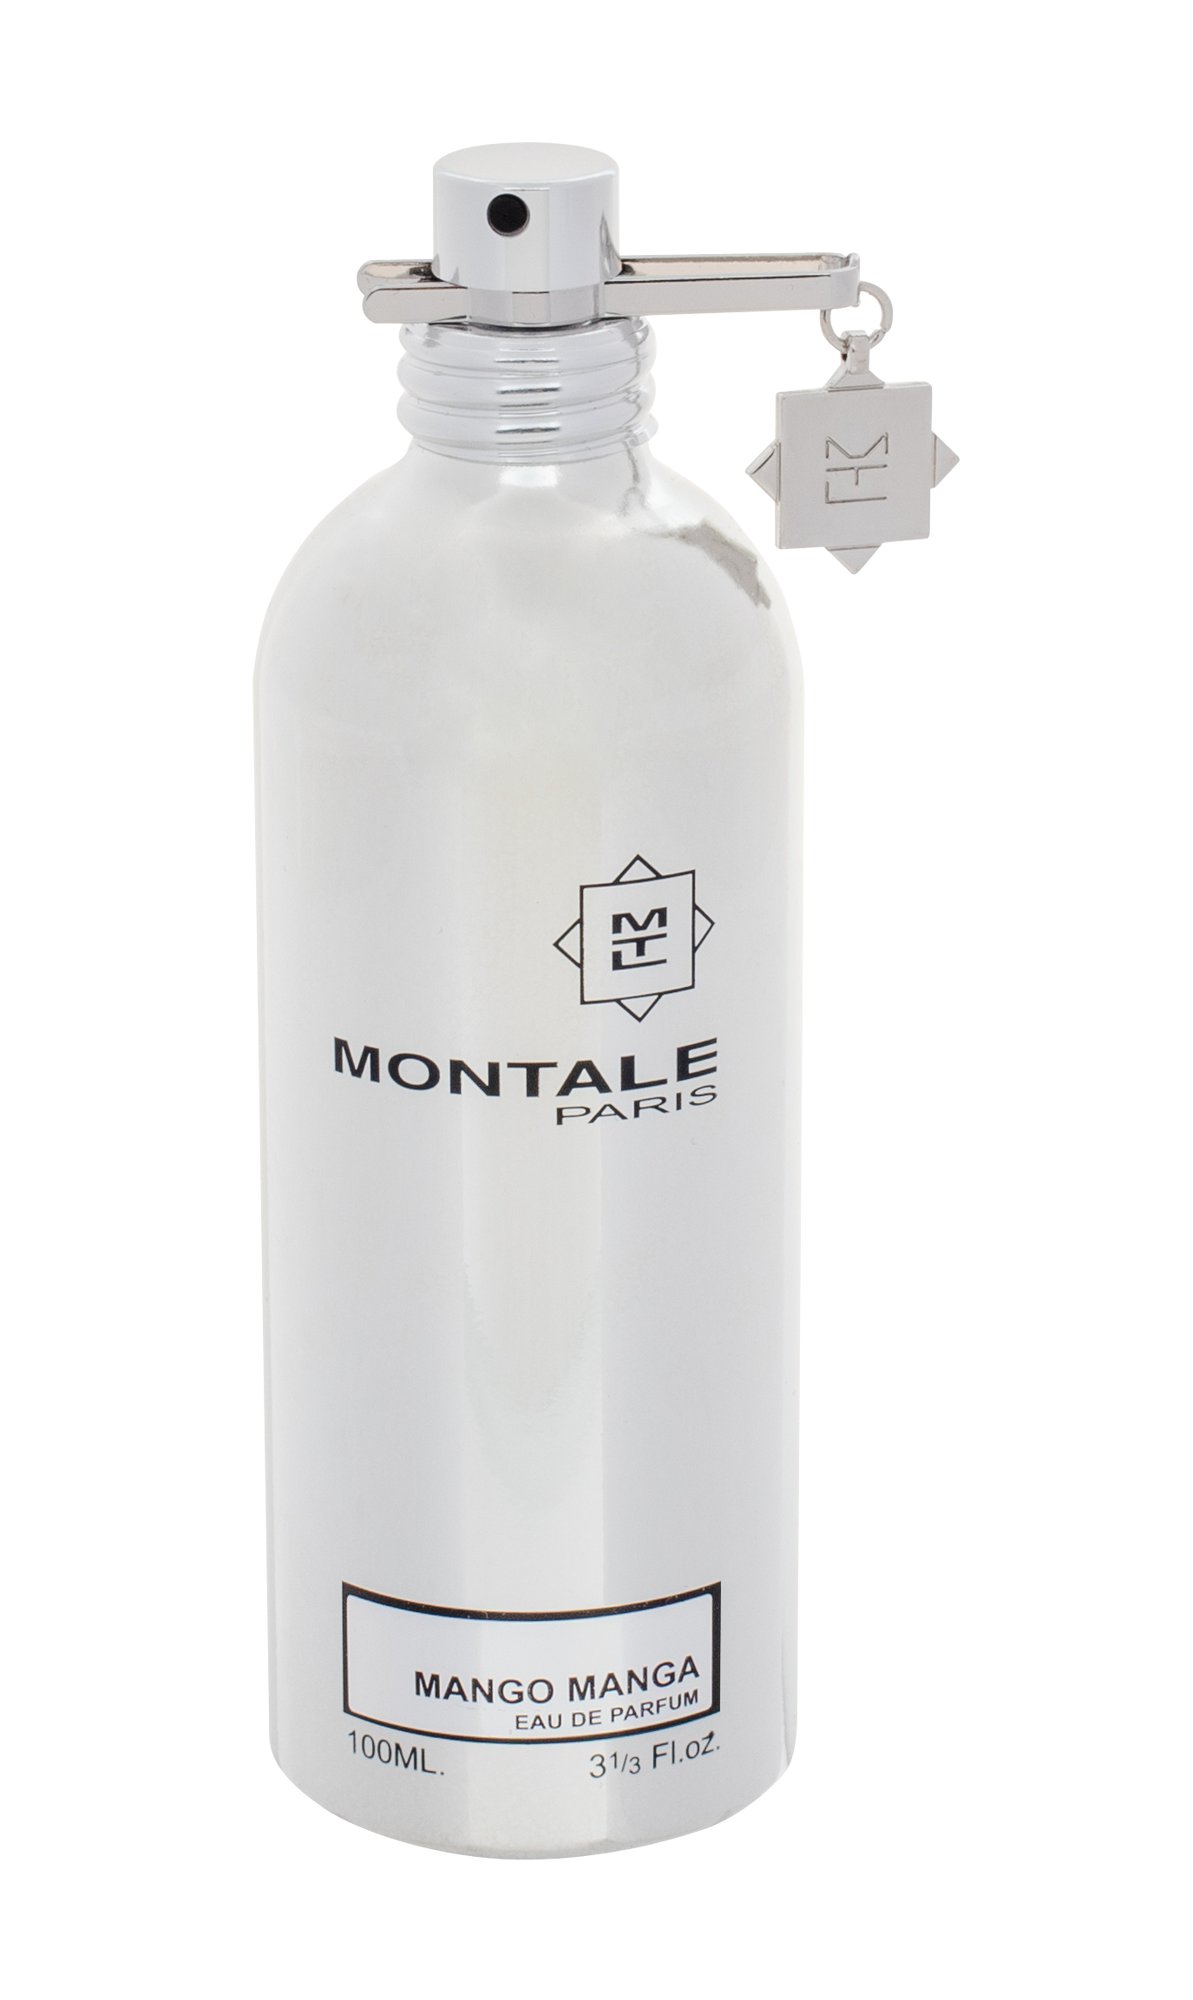 Montale Paris Mango Manga, Parfumovaná voda 100ml - Tester